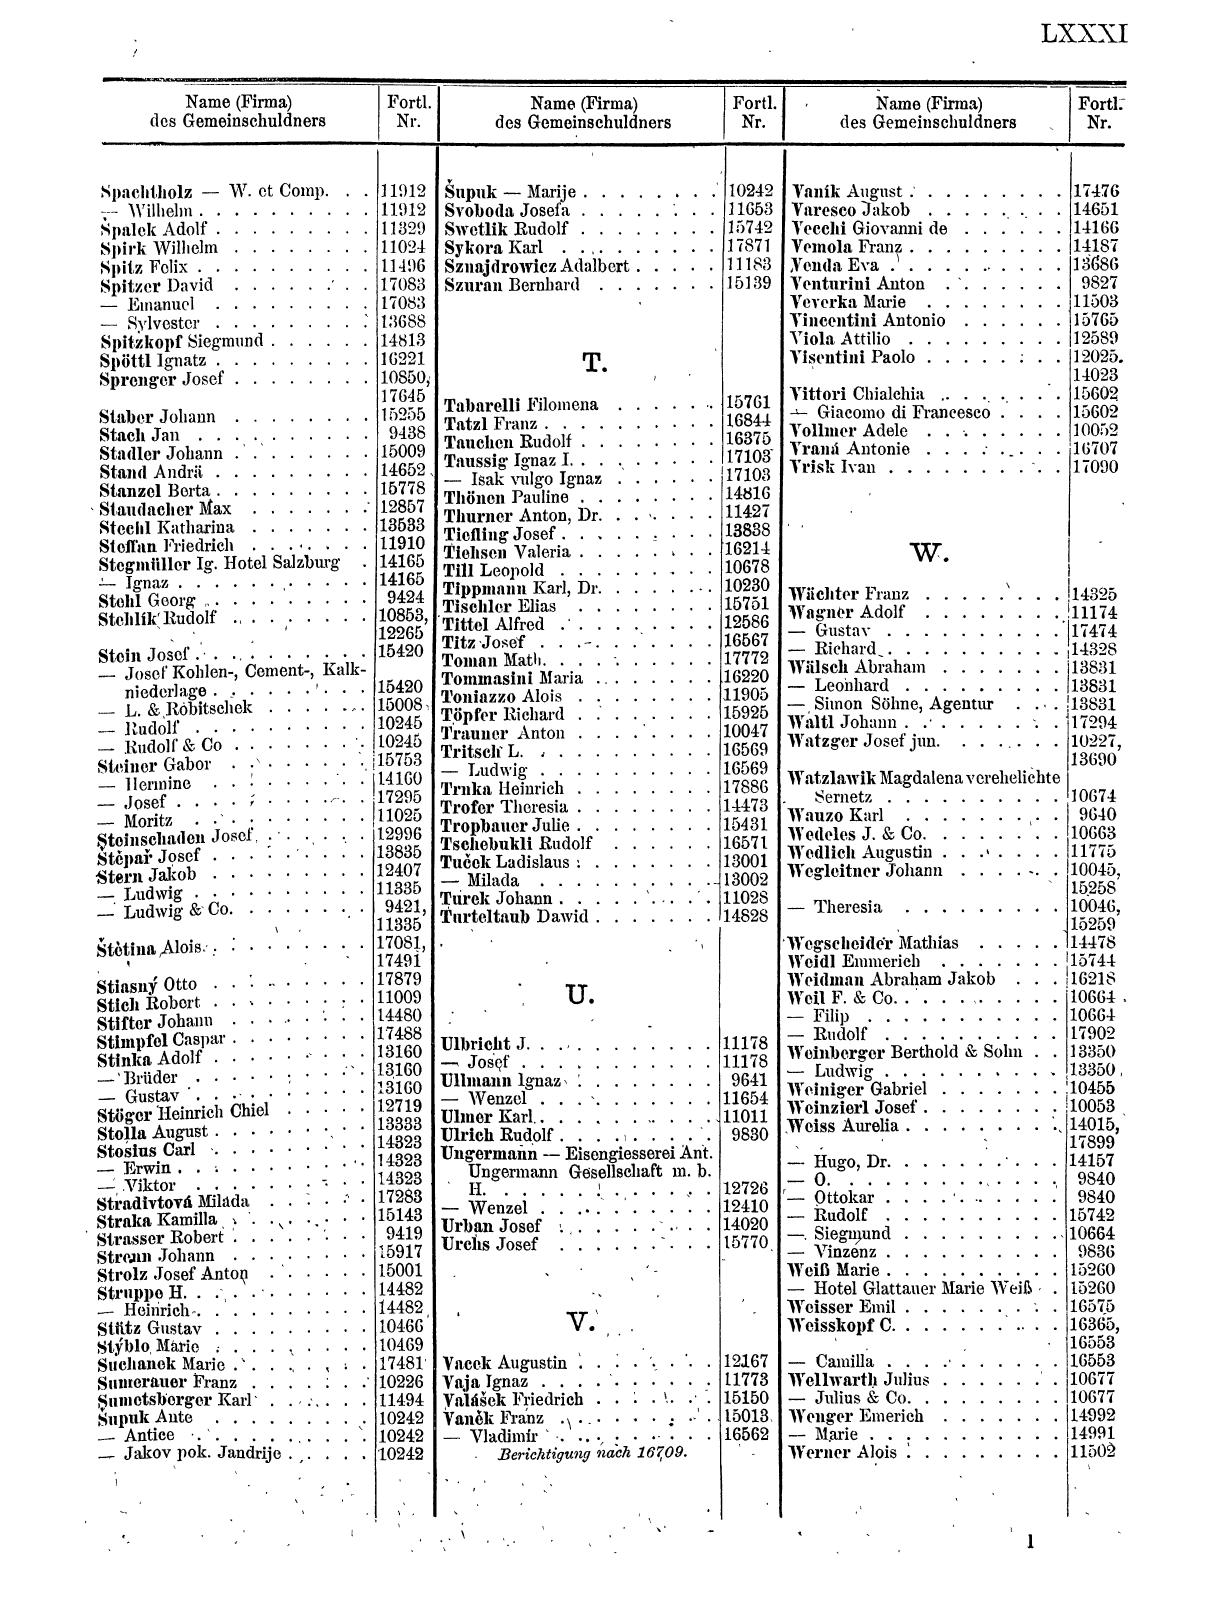 Zentralblatt für die Eintragungen in das Handelsregister 1913, Teil 2 - Seite 85